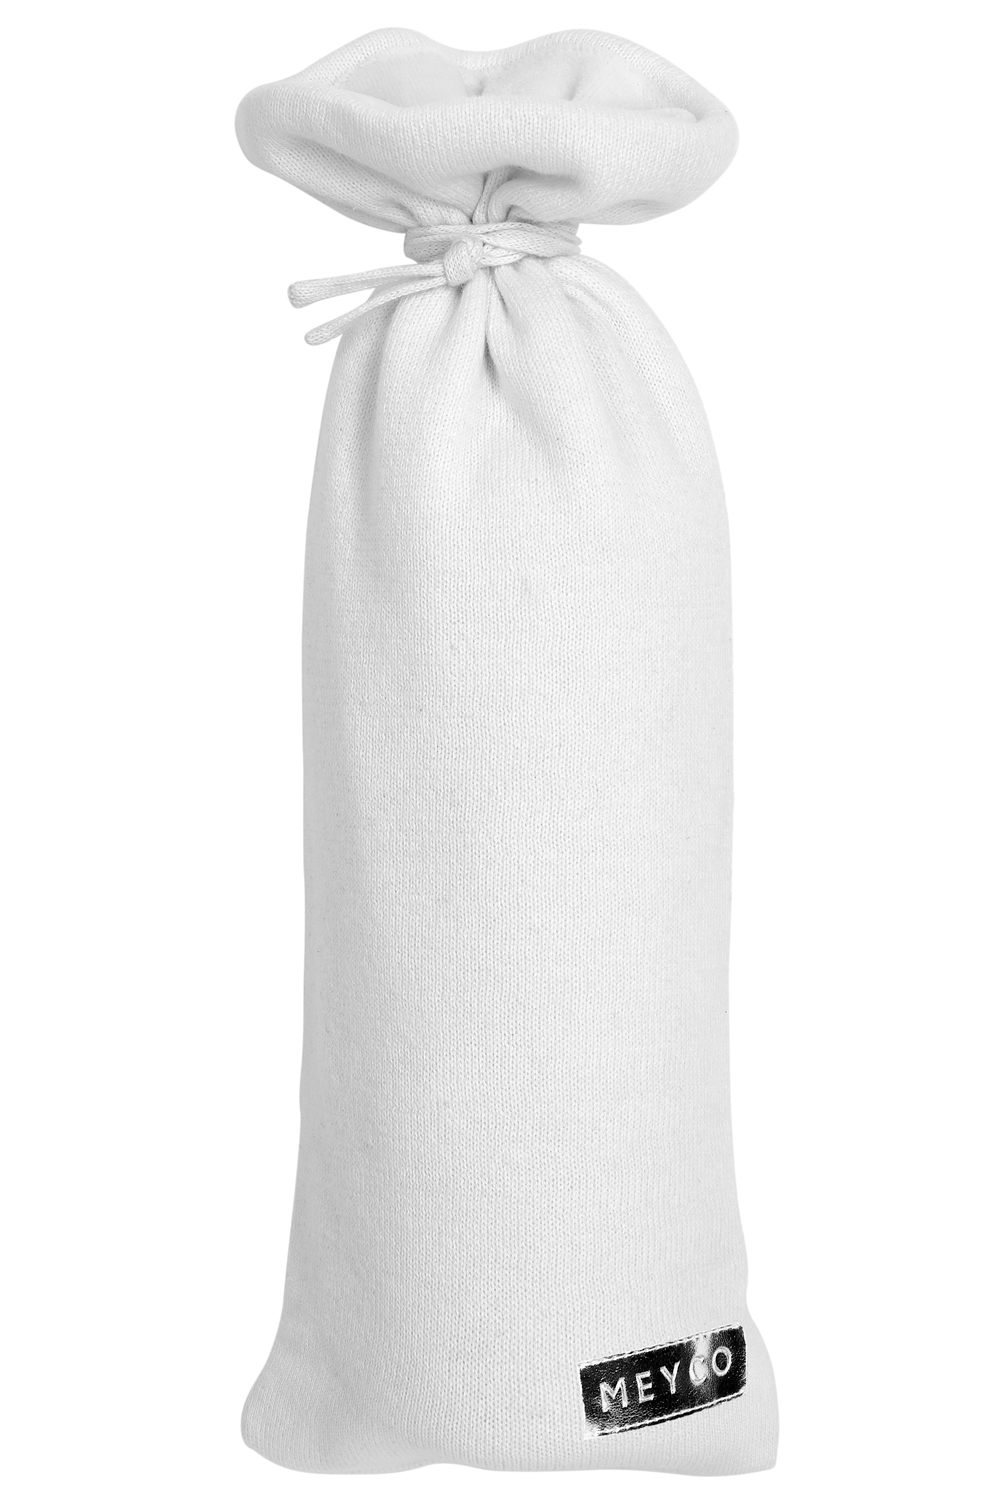 Wärmflaschenbezug Knit warm white | Warm White | Einzelpackung | 2783000